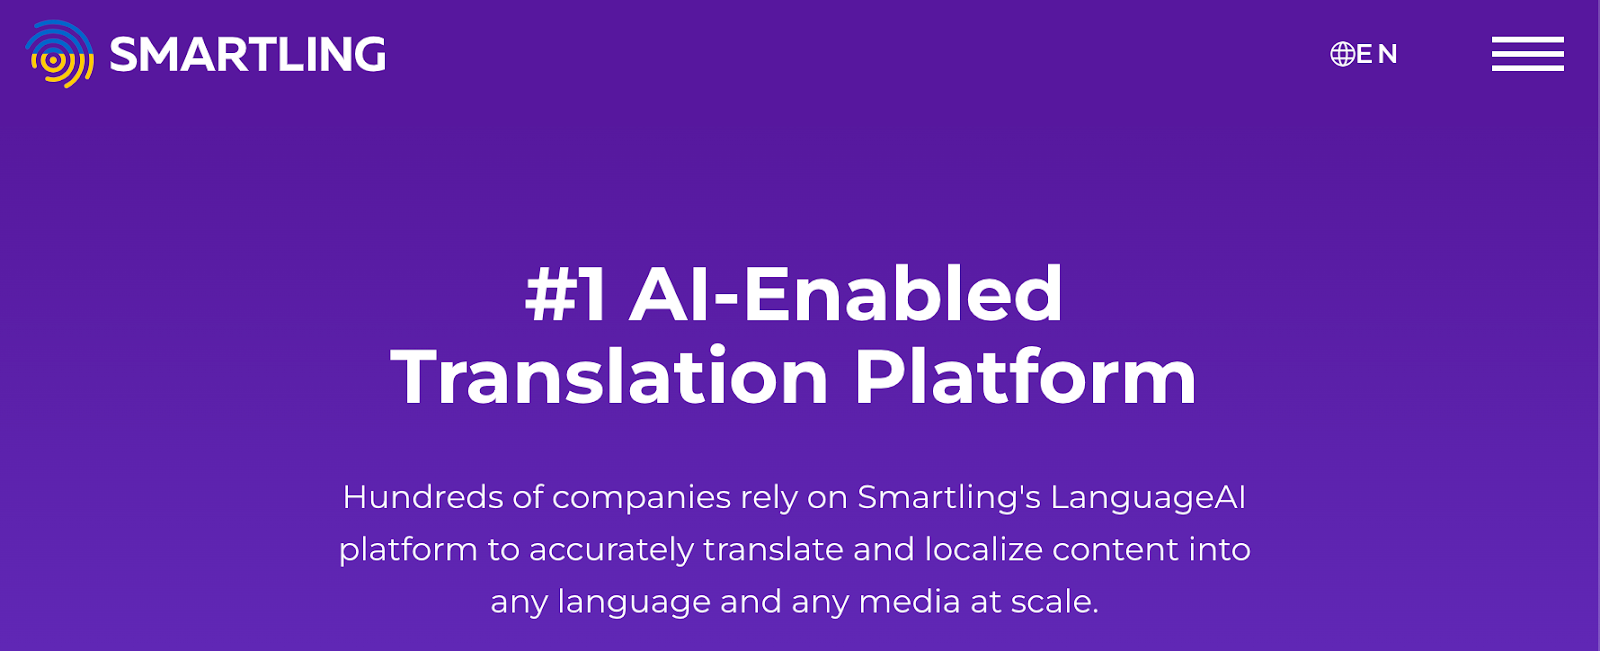 Smartling - the number one AI-enabled Translation Platform